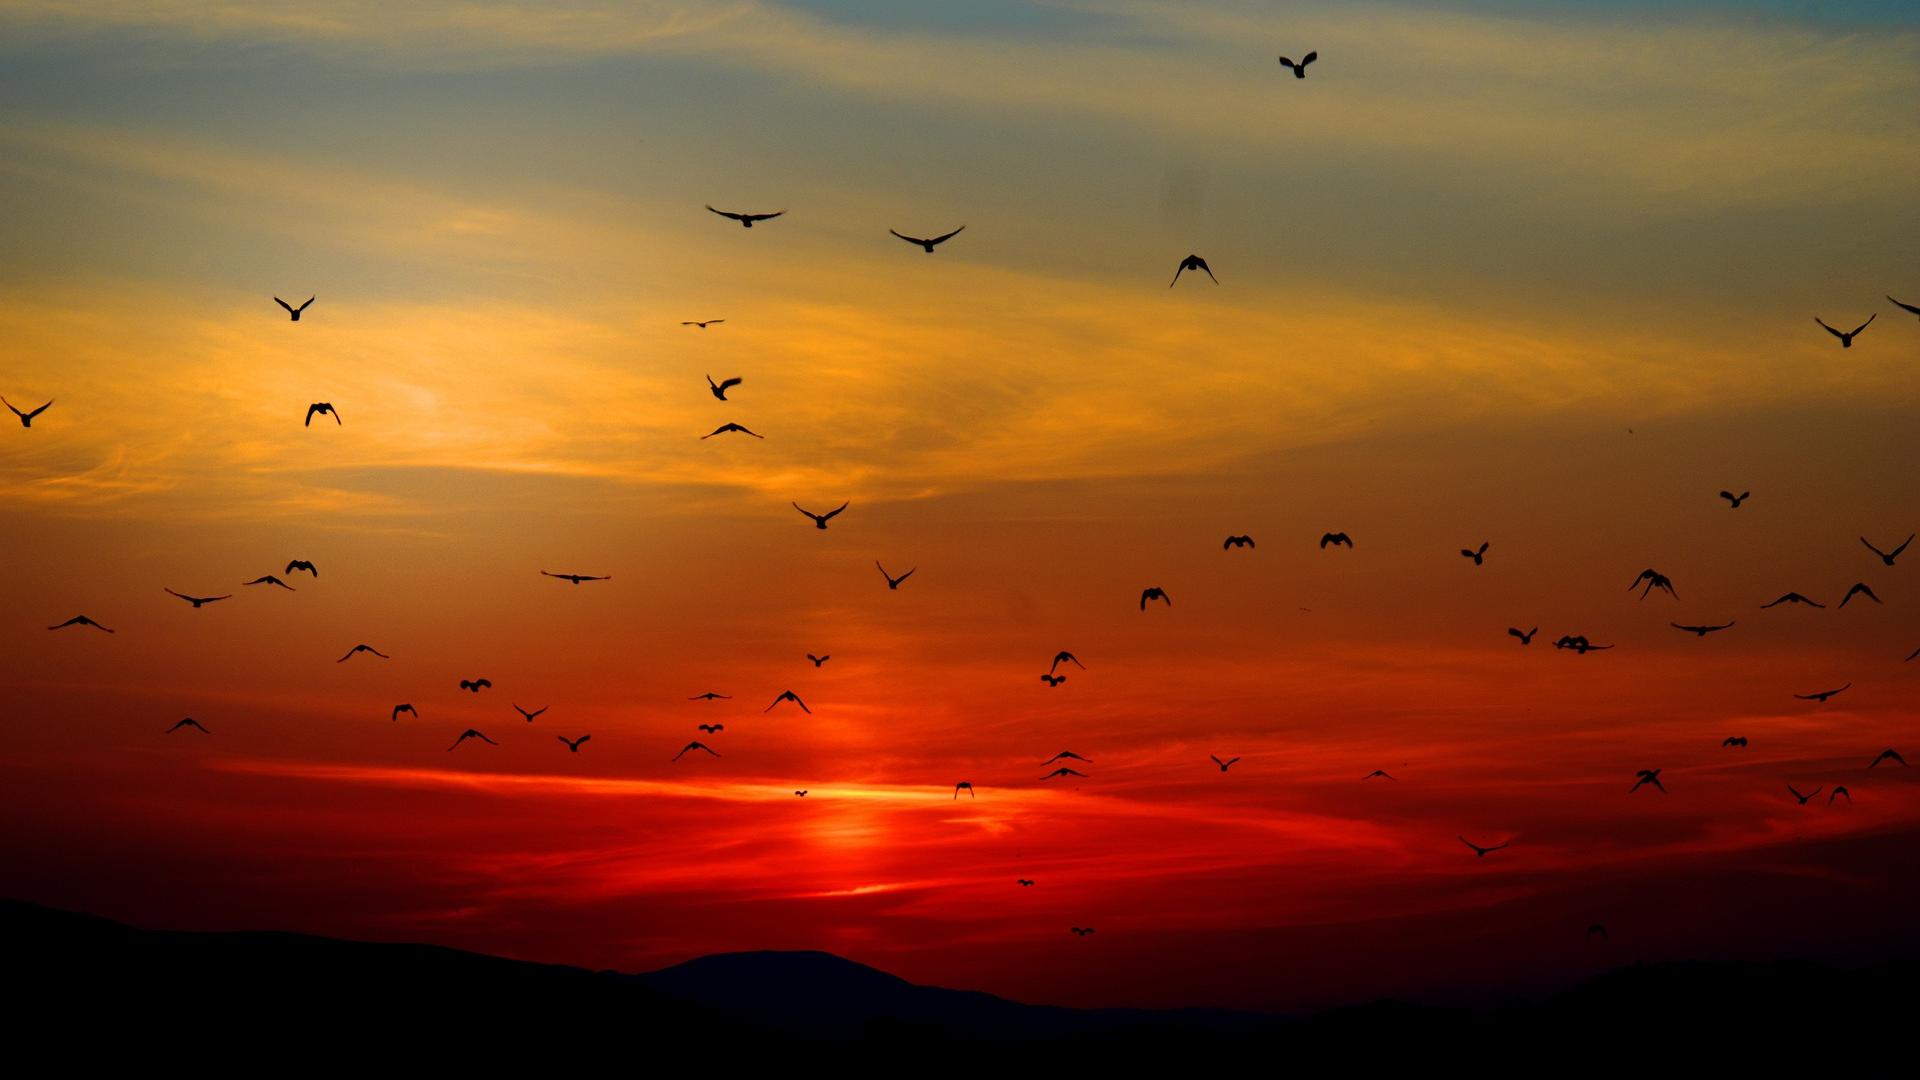 Birds flying against image of orange sunset